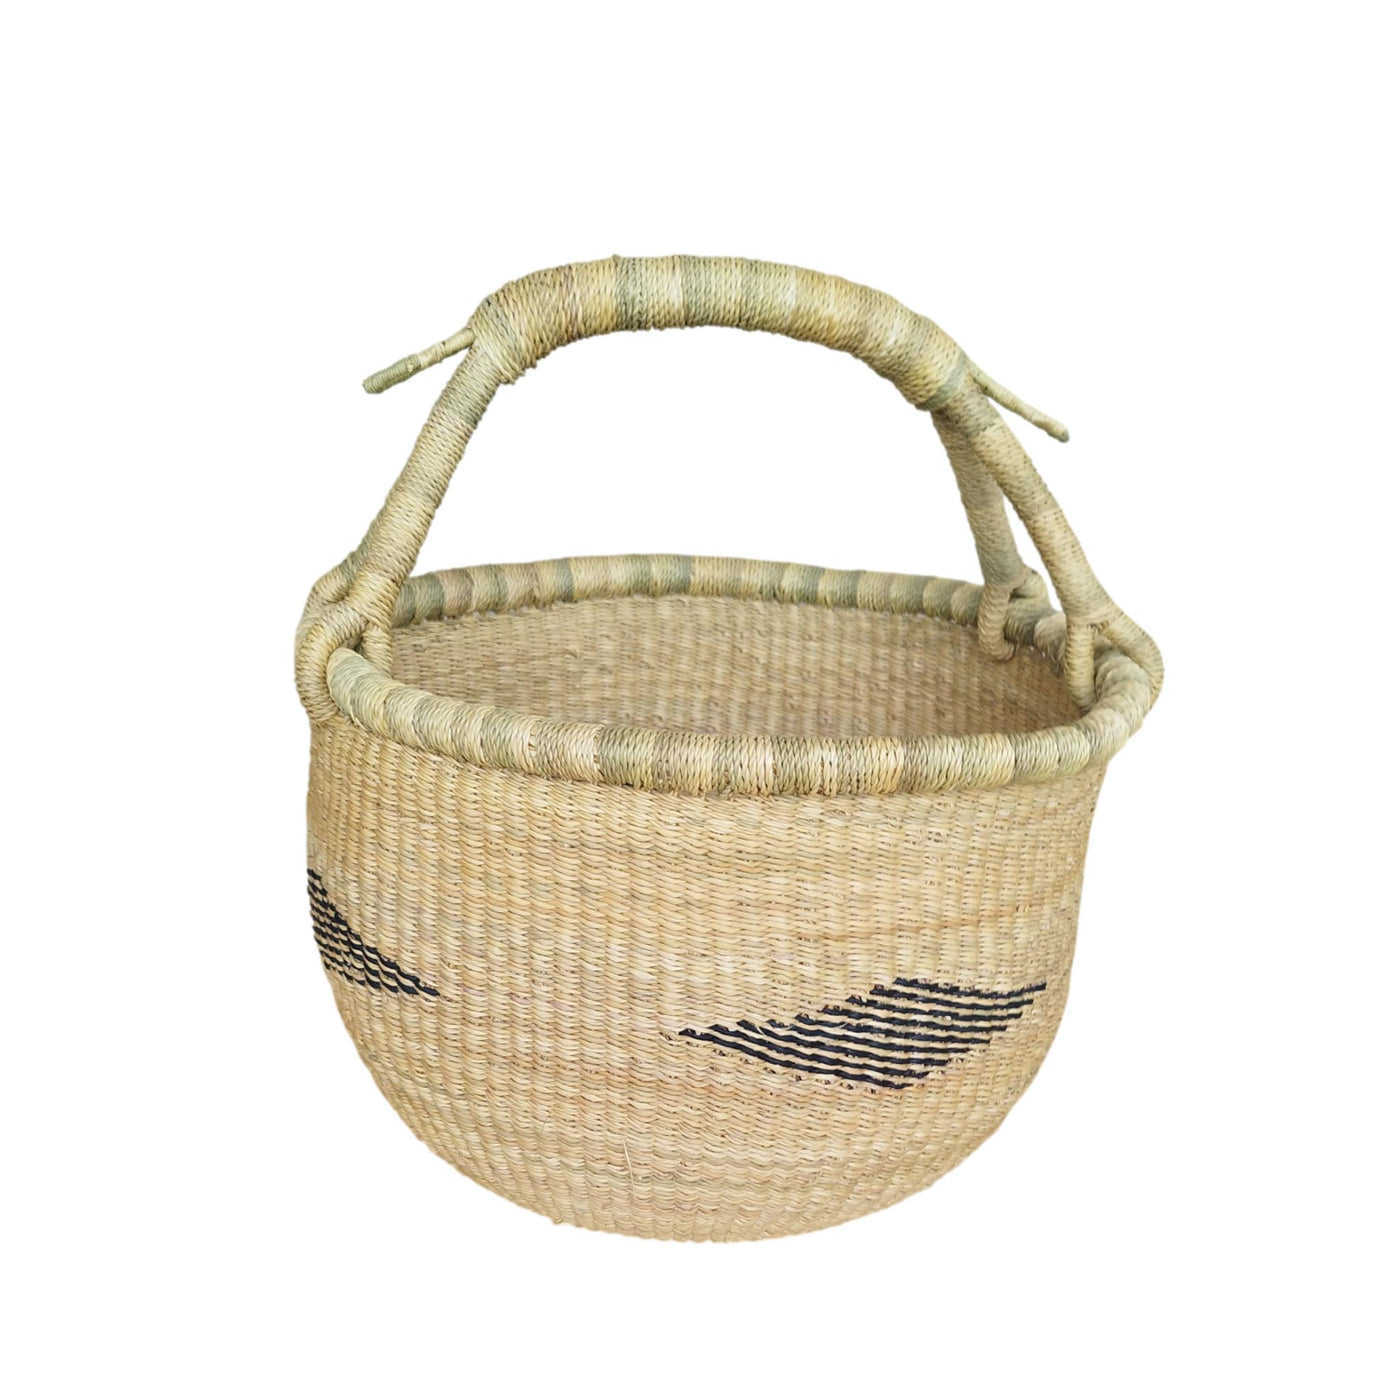 Market Basket| Harvest Basket |Storage basket | African basket | Straw basket | Woven basket | Gift basket | African market basket